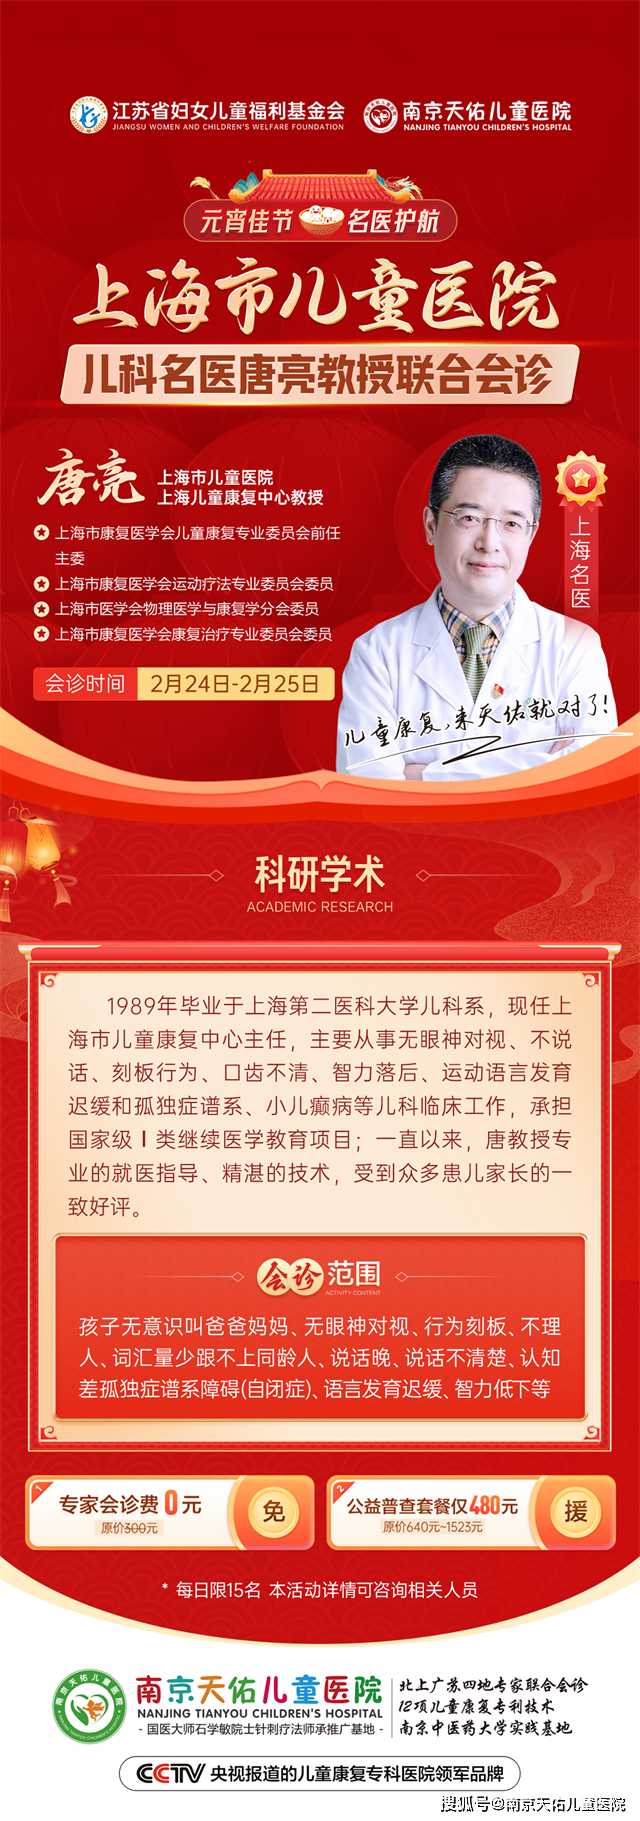 南京天佑儿童医院2月24-25日特邀上海儿科名医唐亮教授会诊，助力儿童早日康复